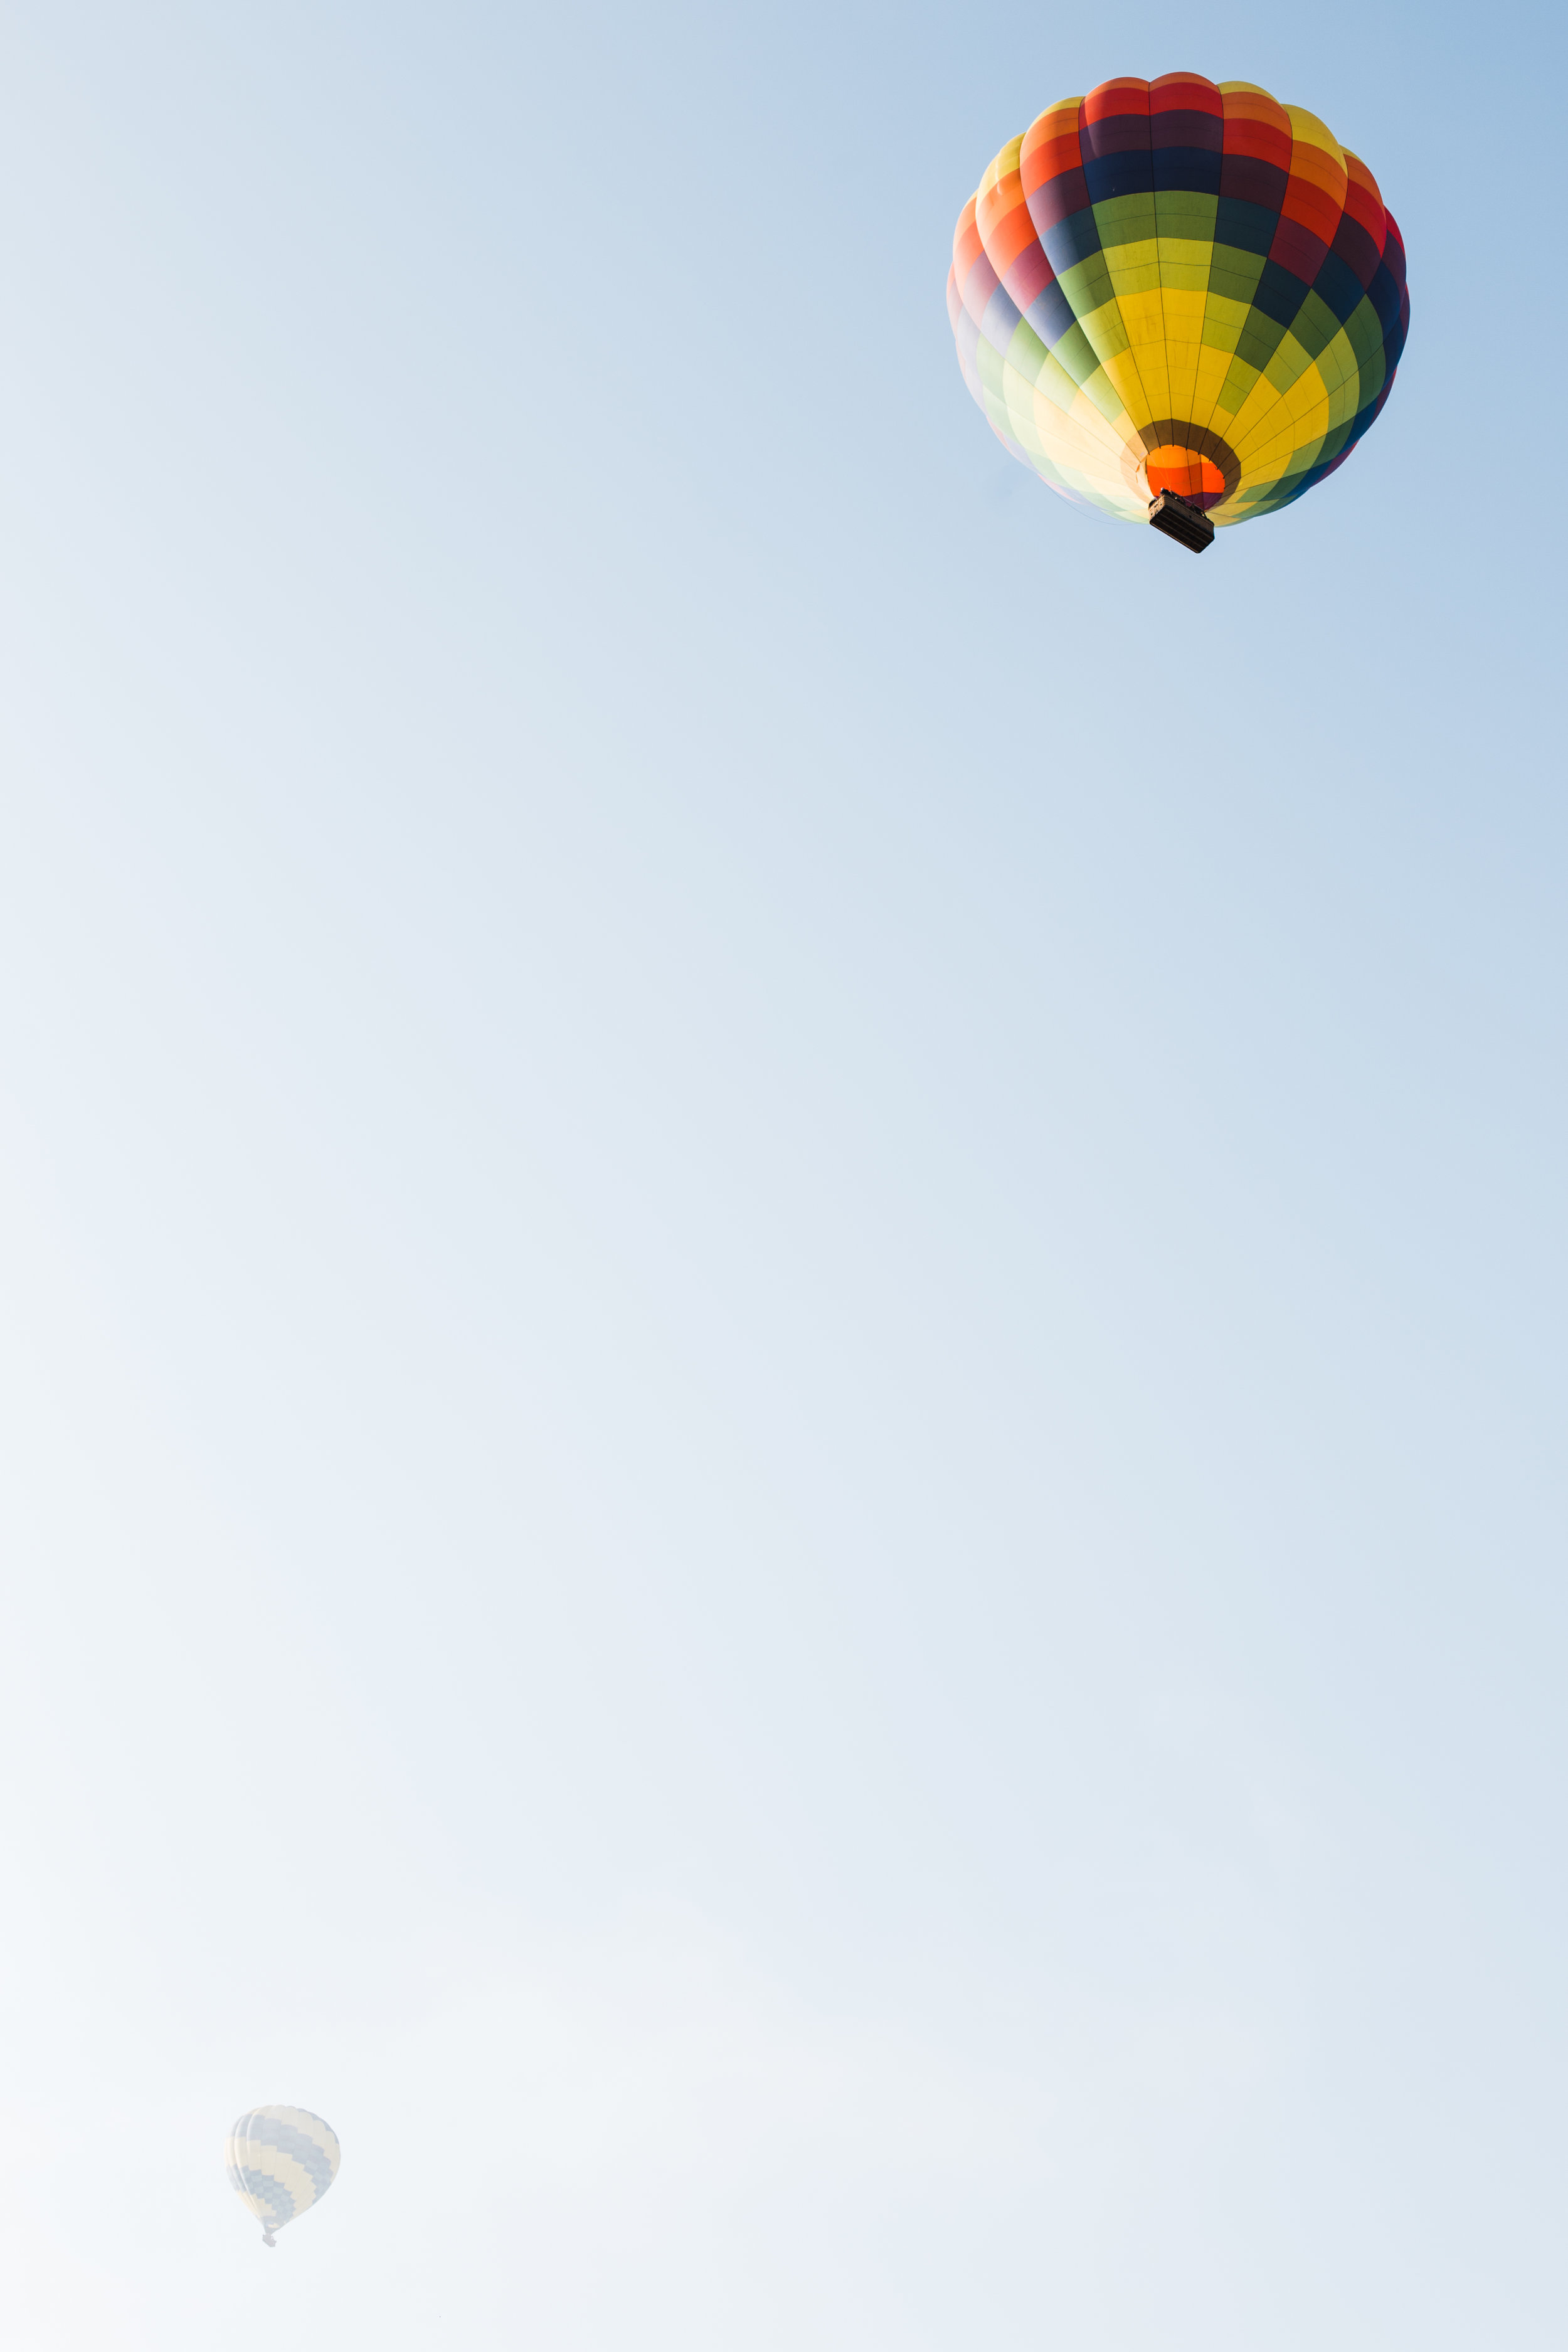 Yountville + Hot Air Balloons-50.JPG